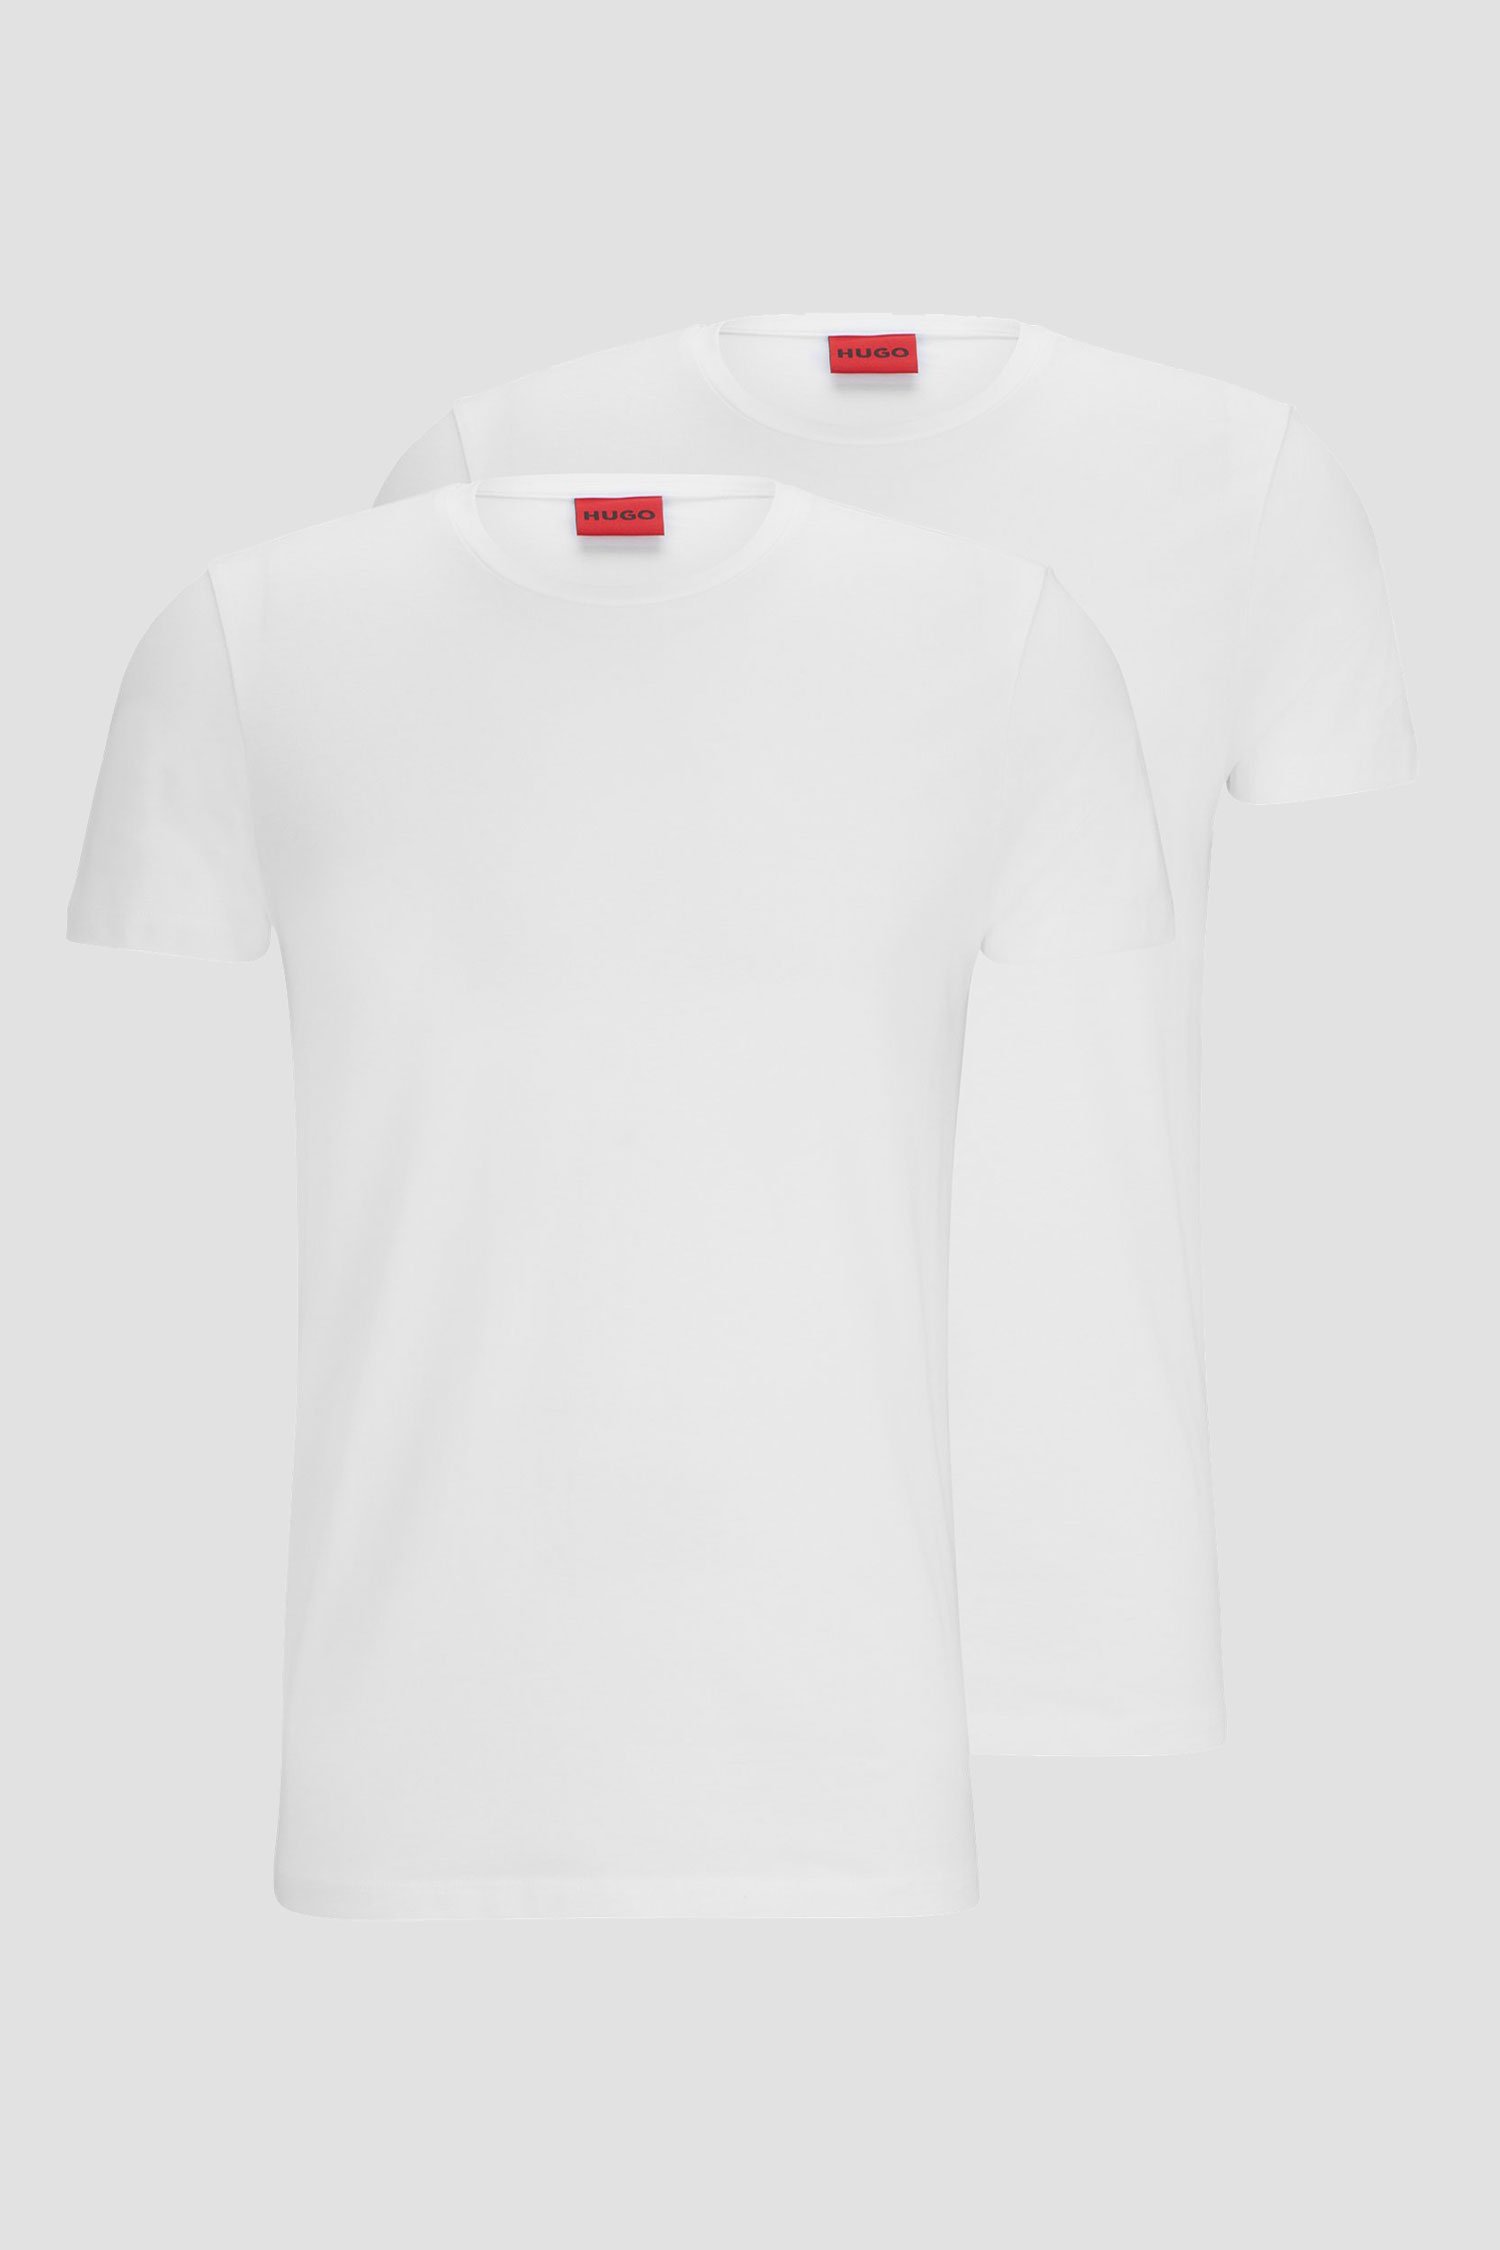 Чоловіча біла футболка (2 шт) 1